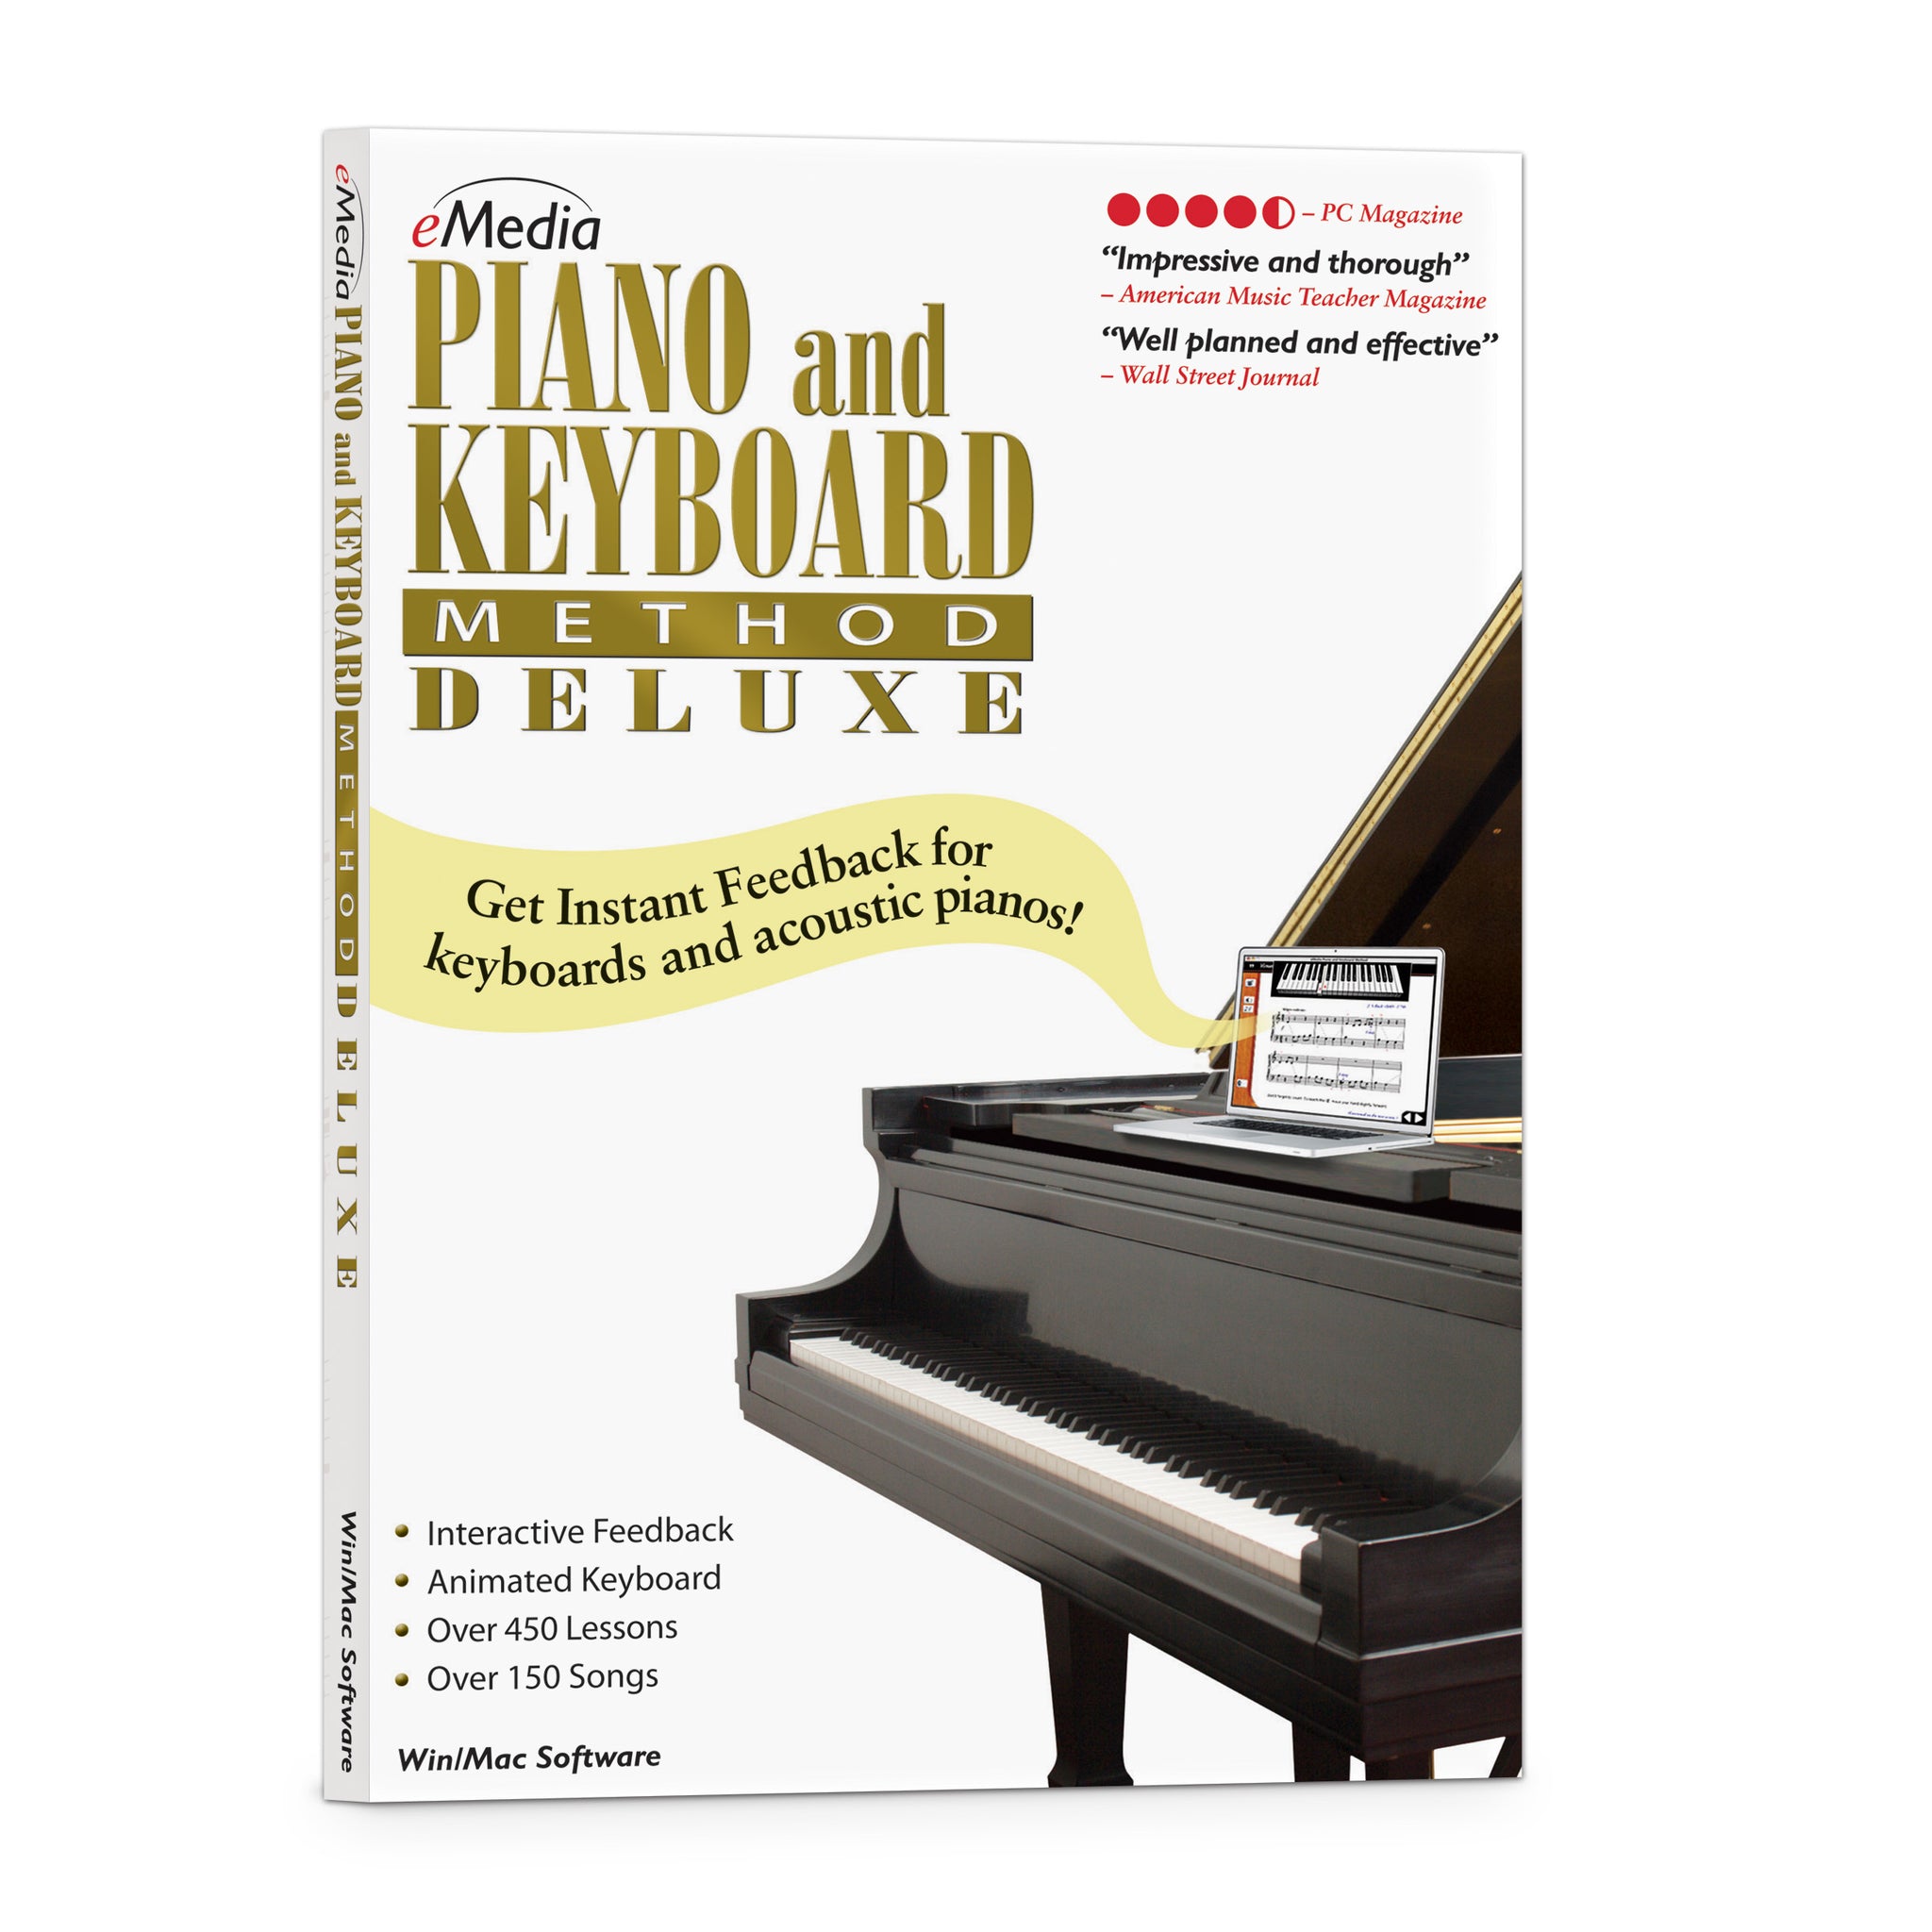 eMedia Piano and Keyboard Method Deluxe